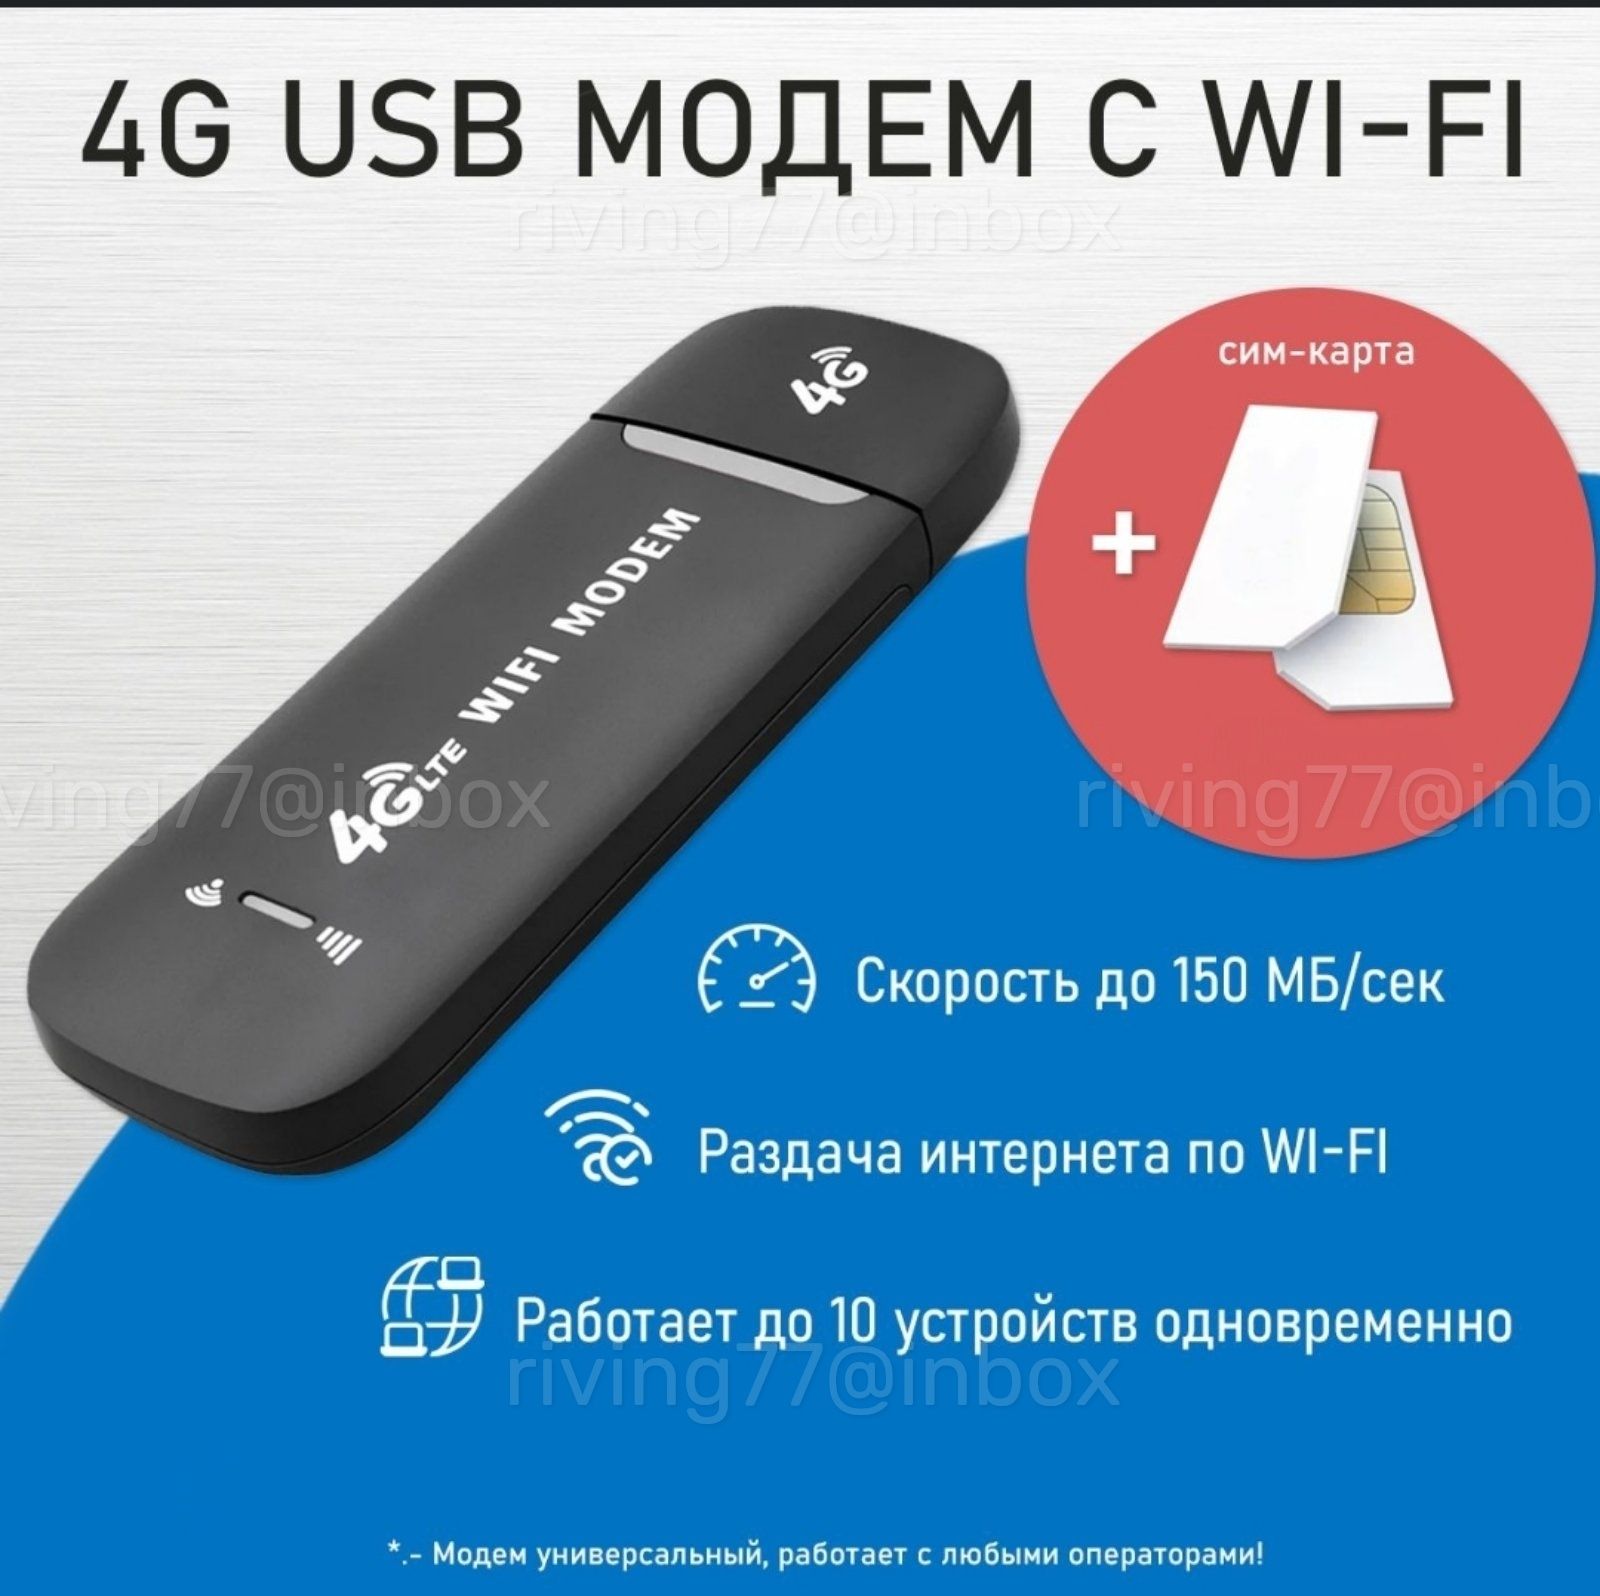 Многофункциональный WIFI роутер + 4G/3G модем + СИМ В ПОДАРОК!